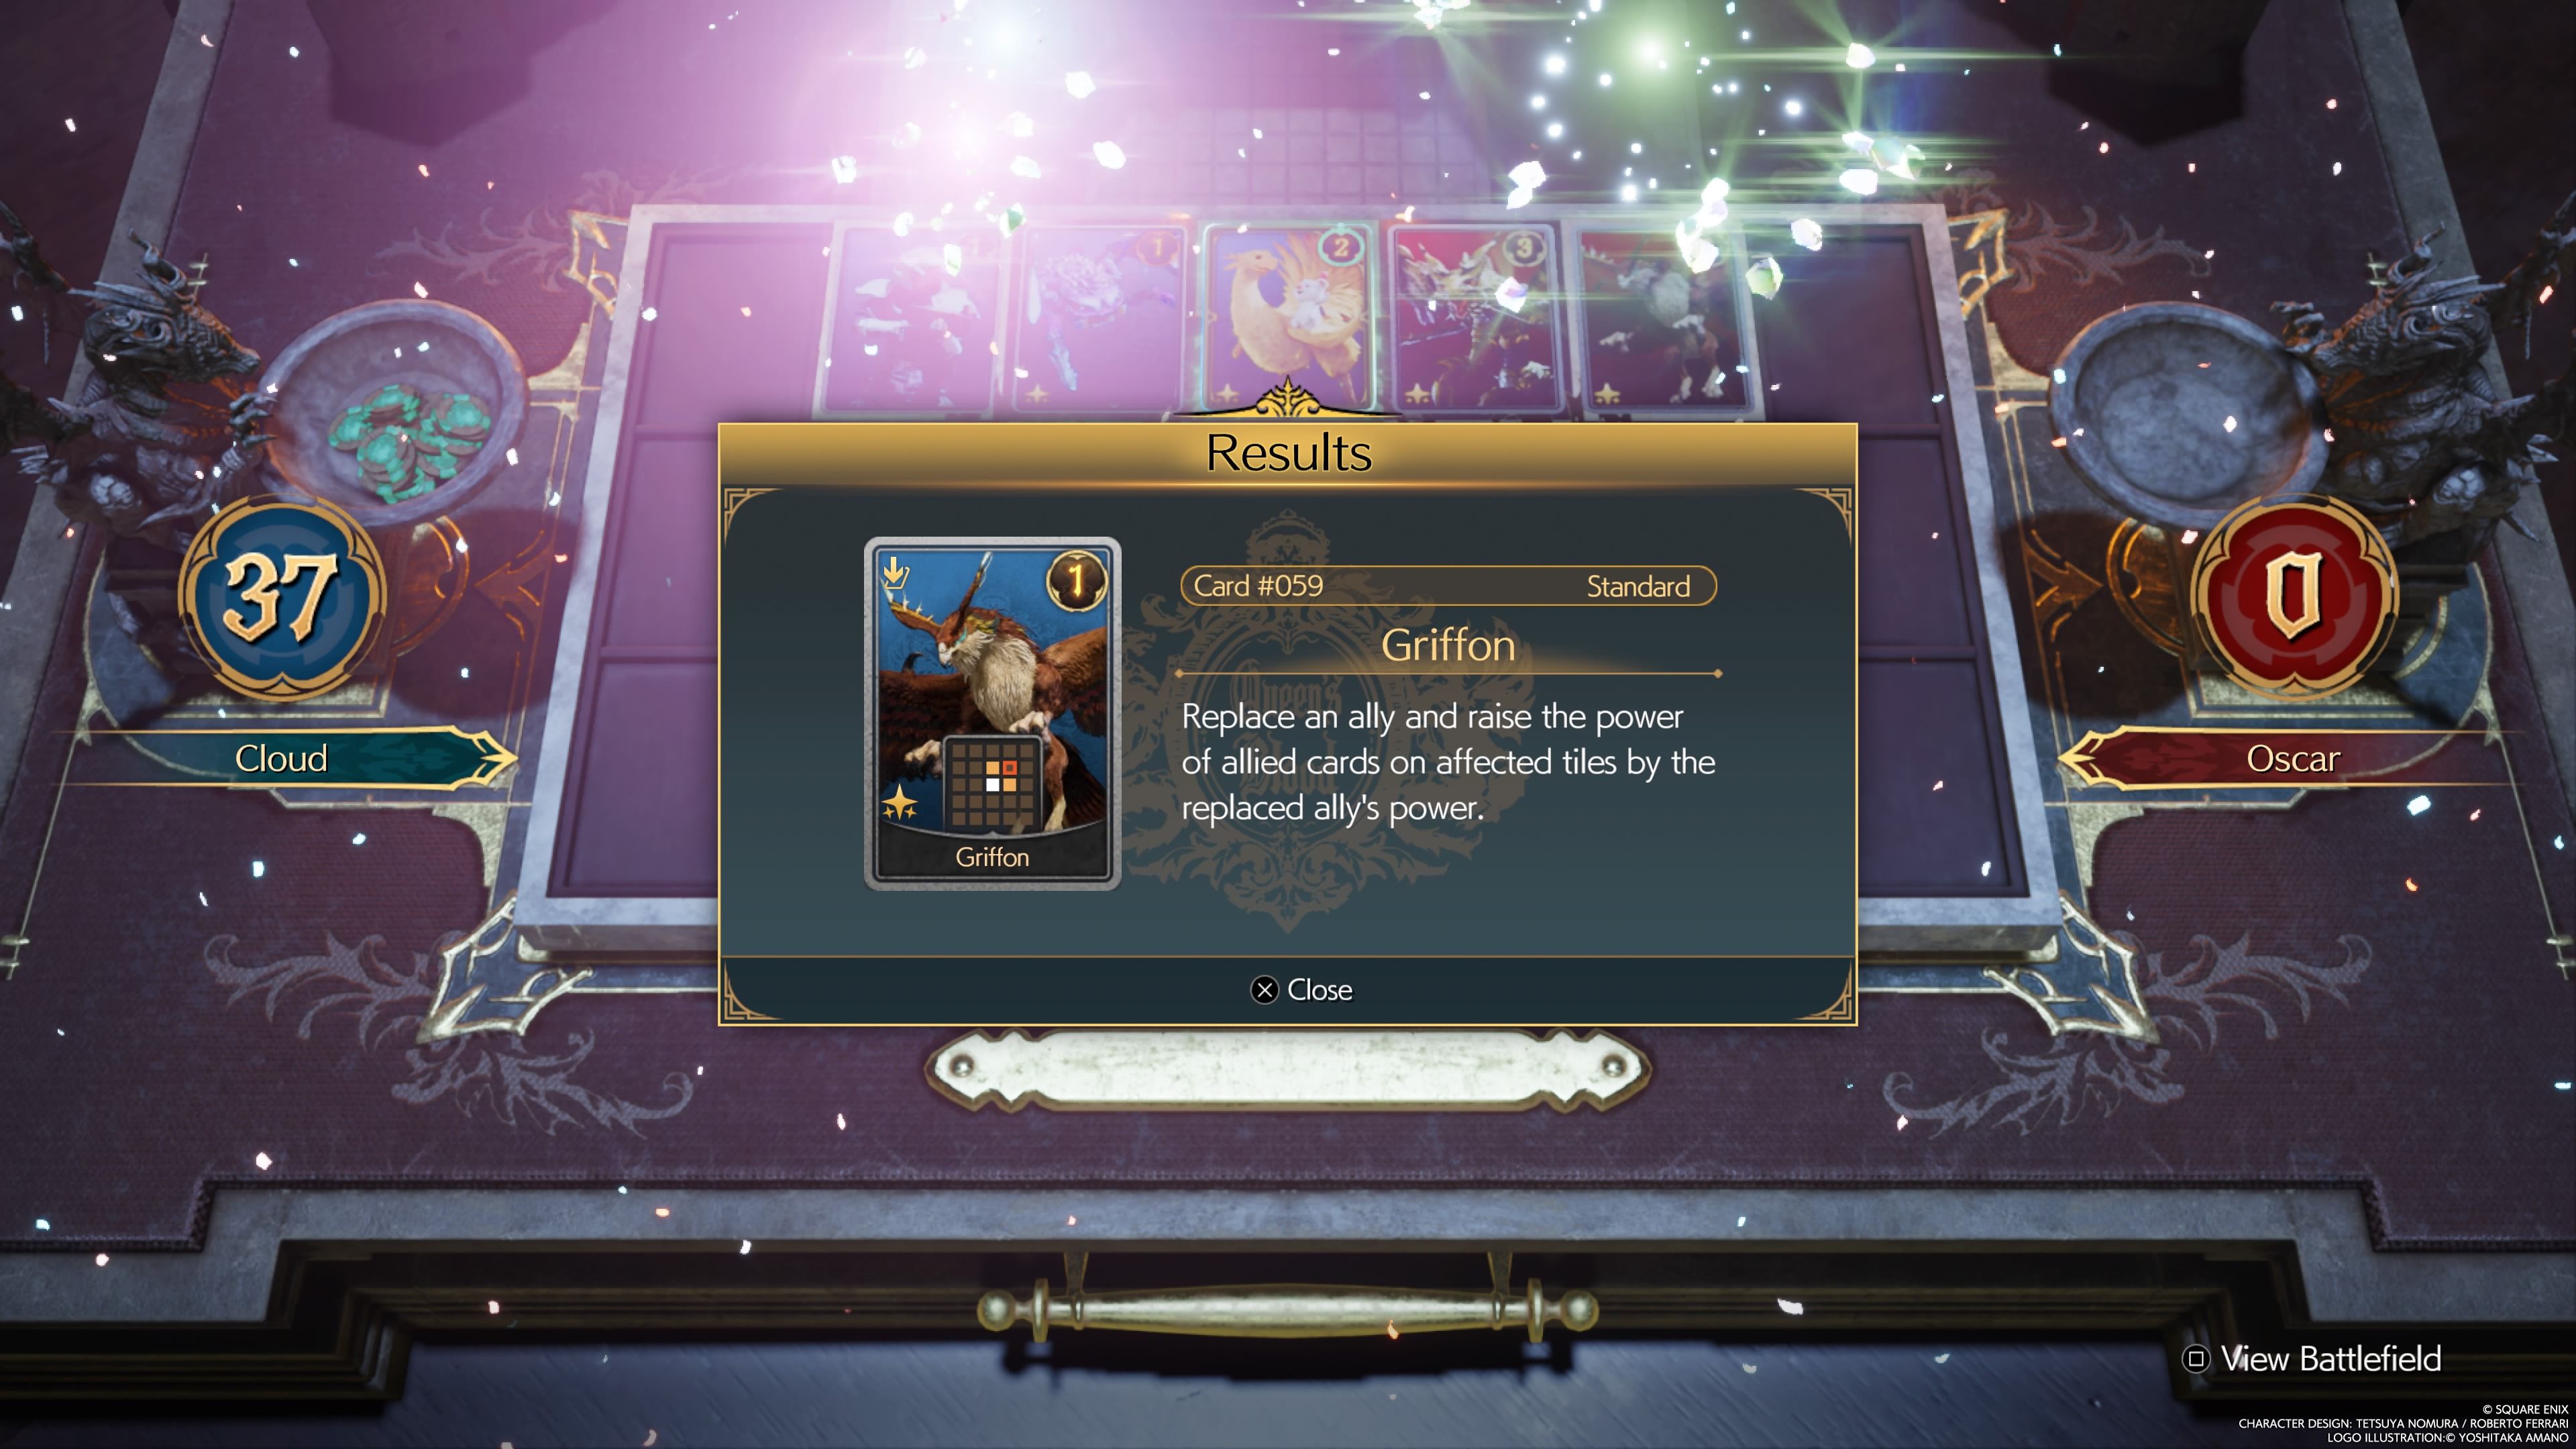 Griffon Reward for defeating Oscar Final Fantasy 7 Rebirth